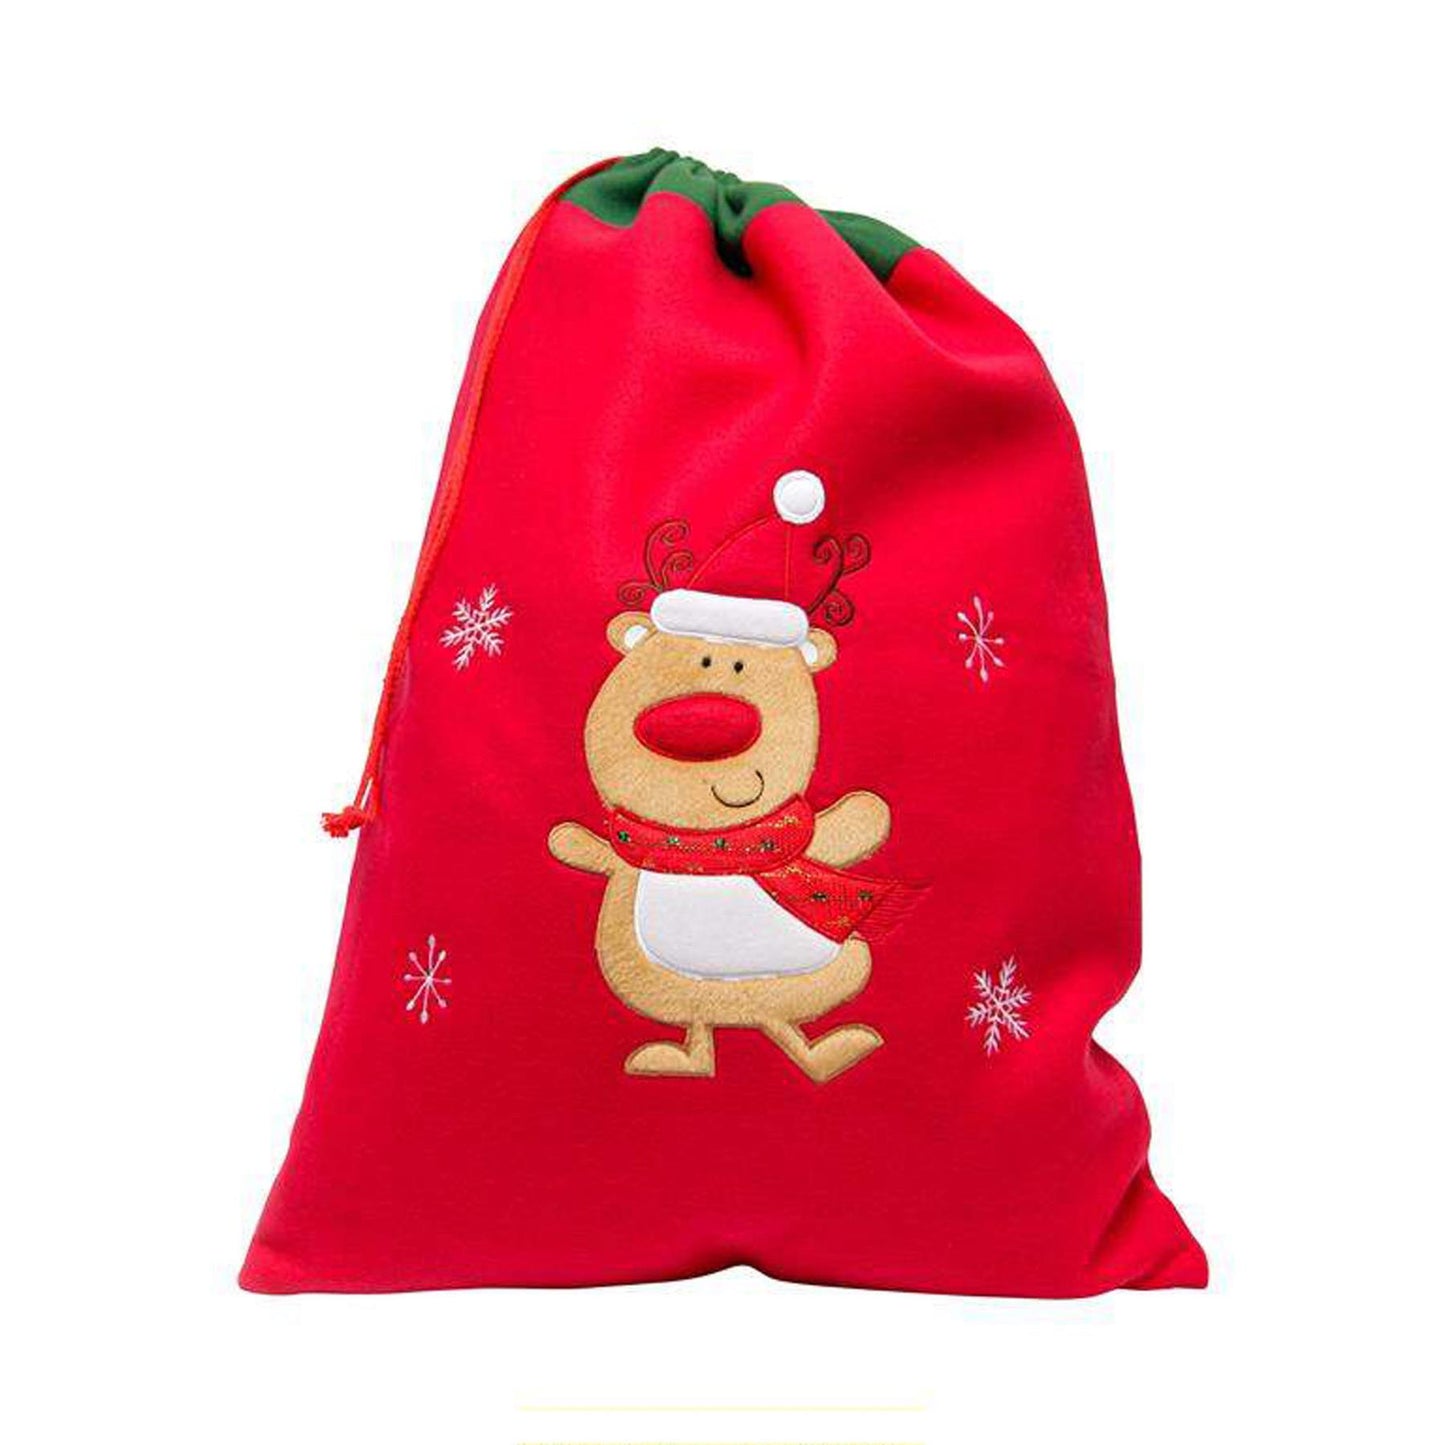 Personalised Embroidered Large Christmas Reindeer Santa Sack  - Always Looking Good -   